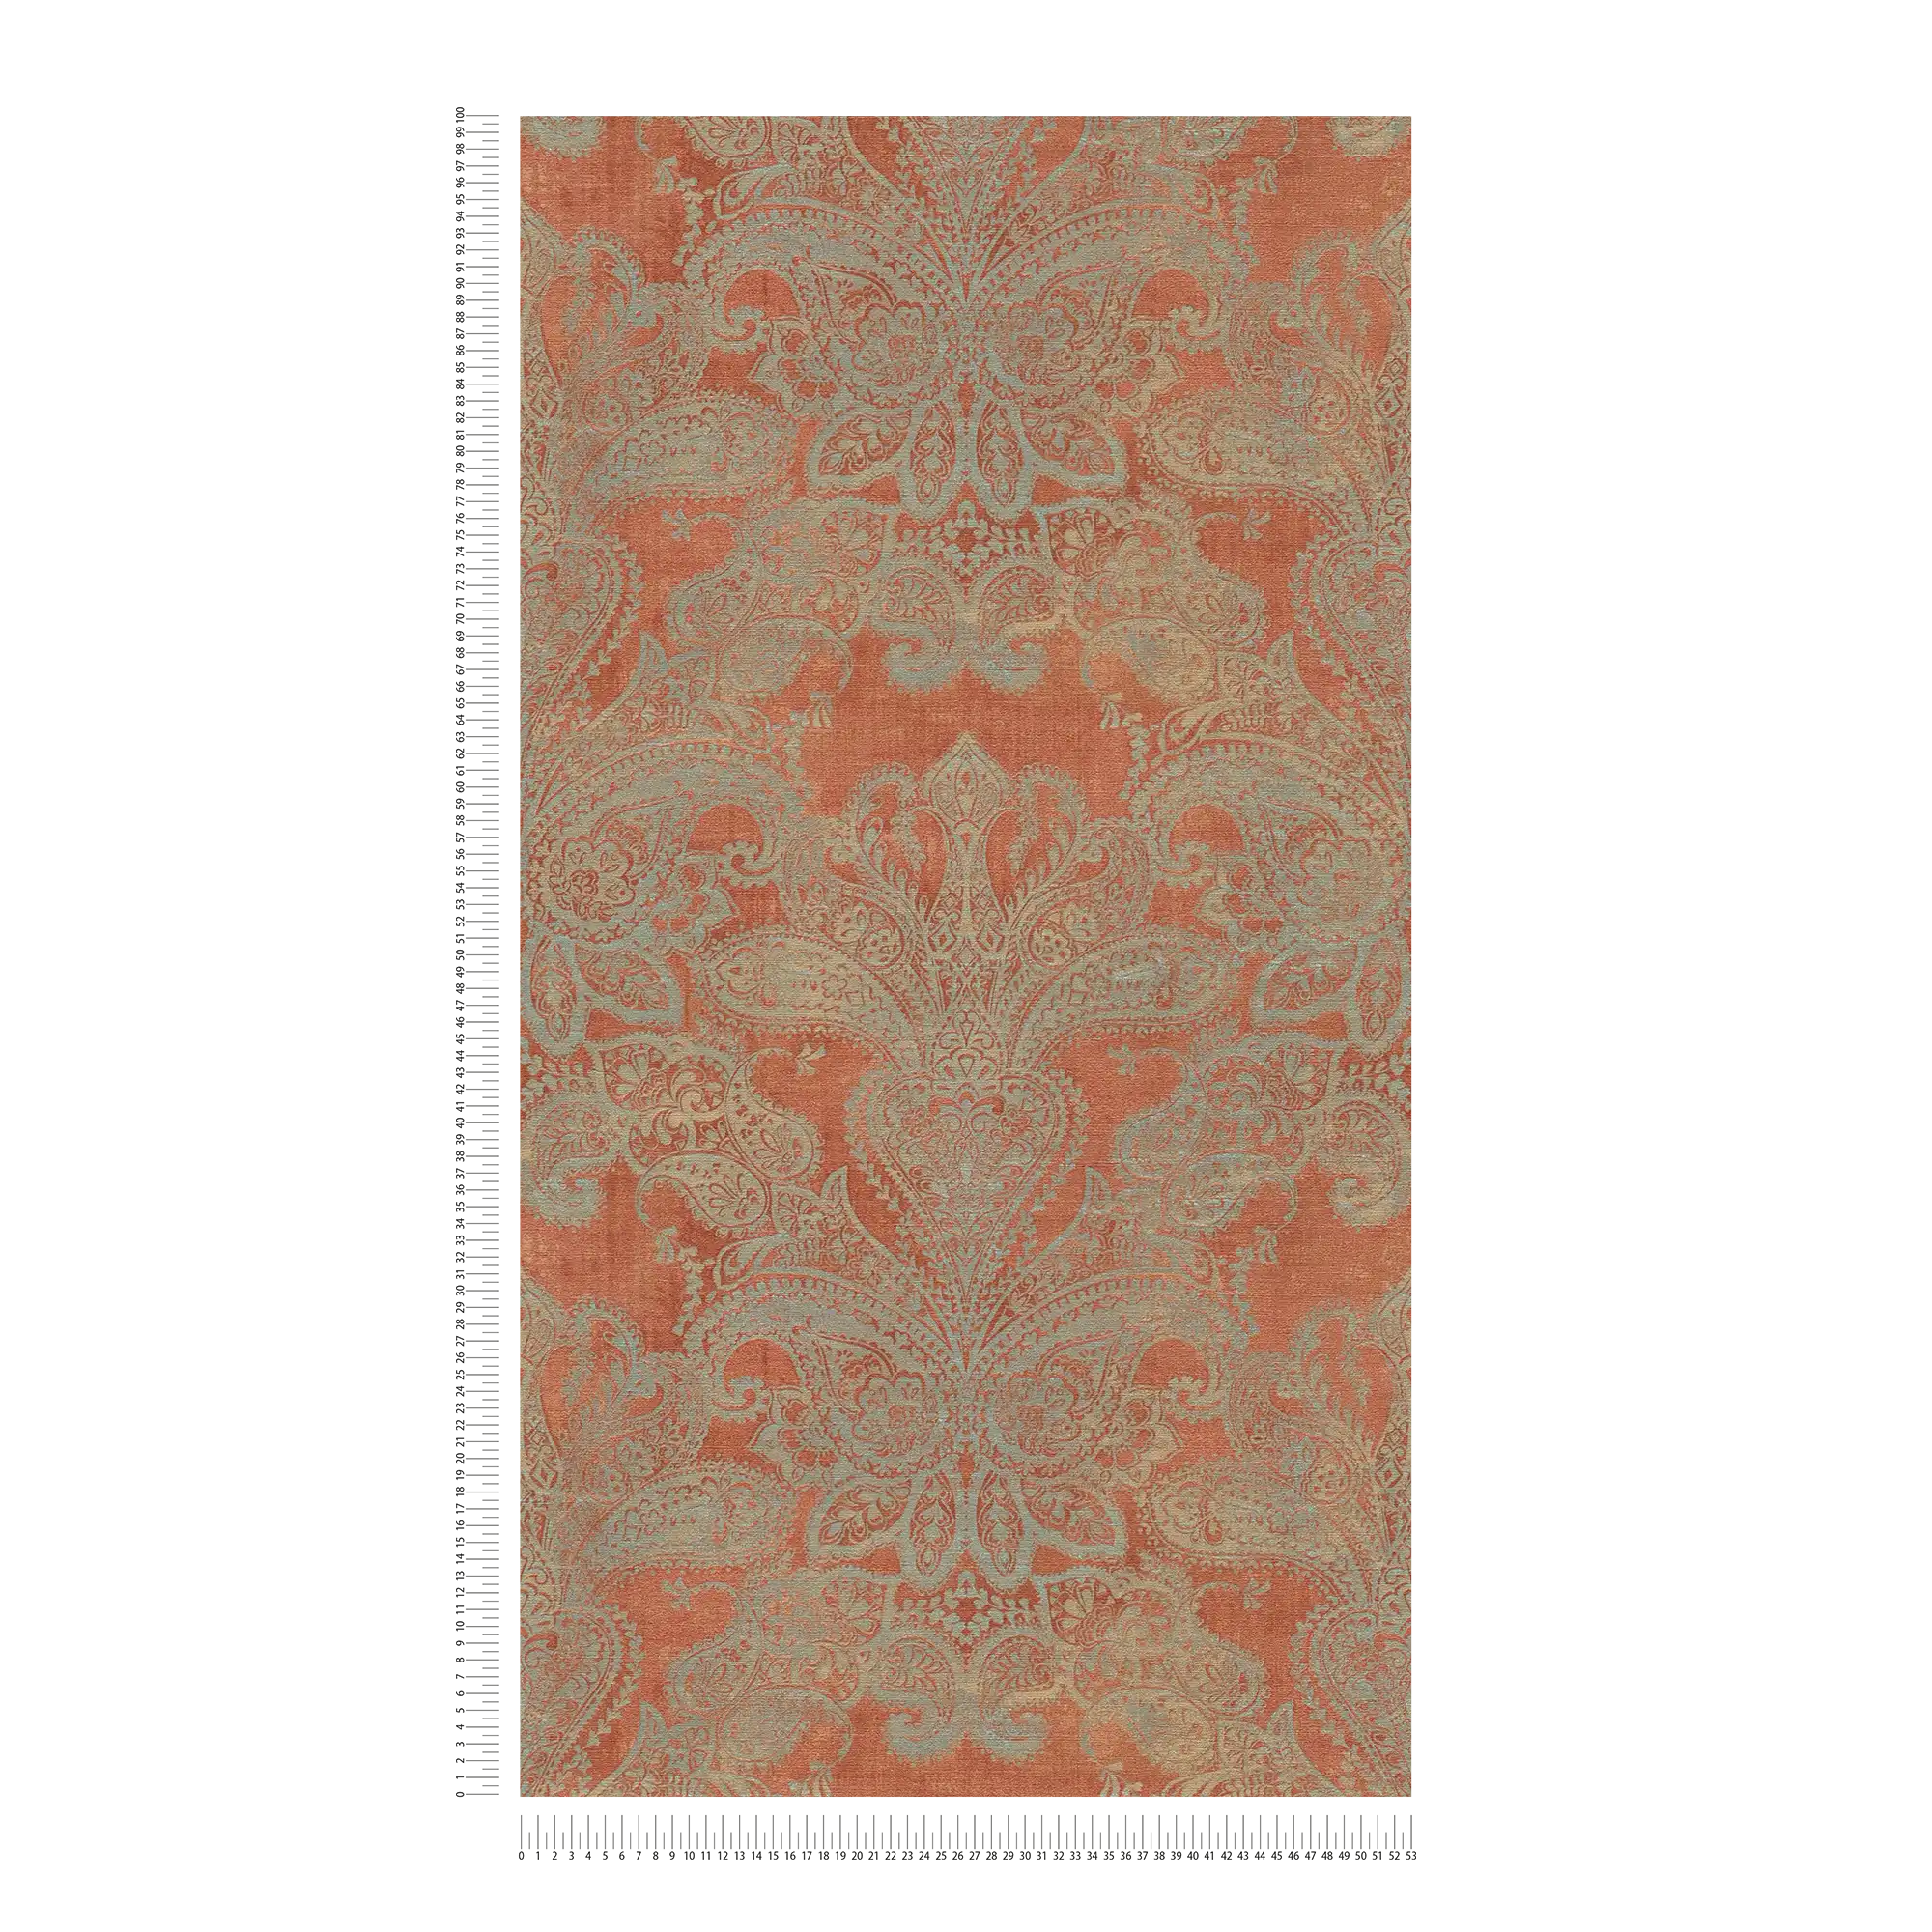             Carta da parati in tessuto non tessuto in stile barocco con ornamenti - arancione, turchese, grigio
        